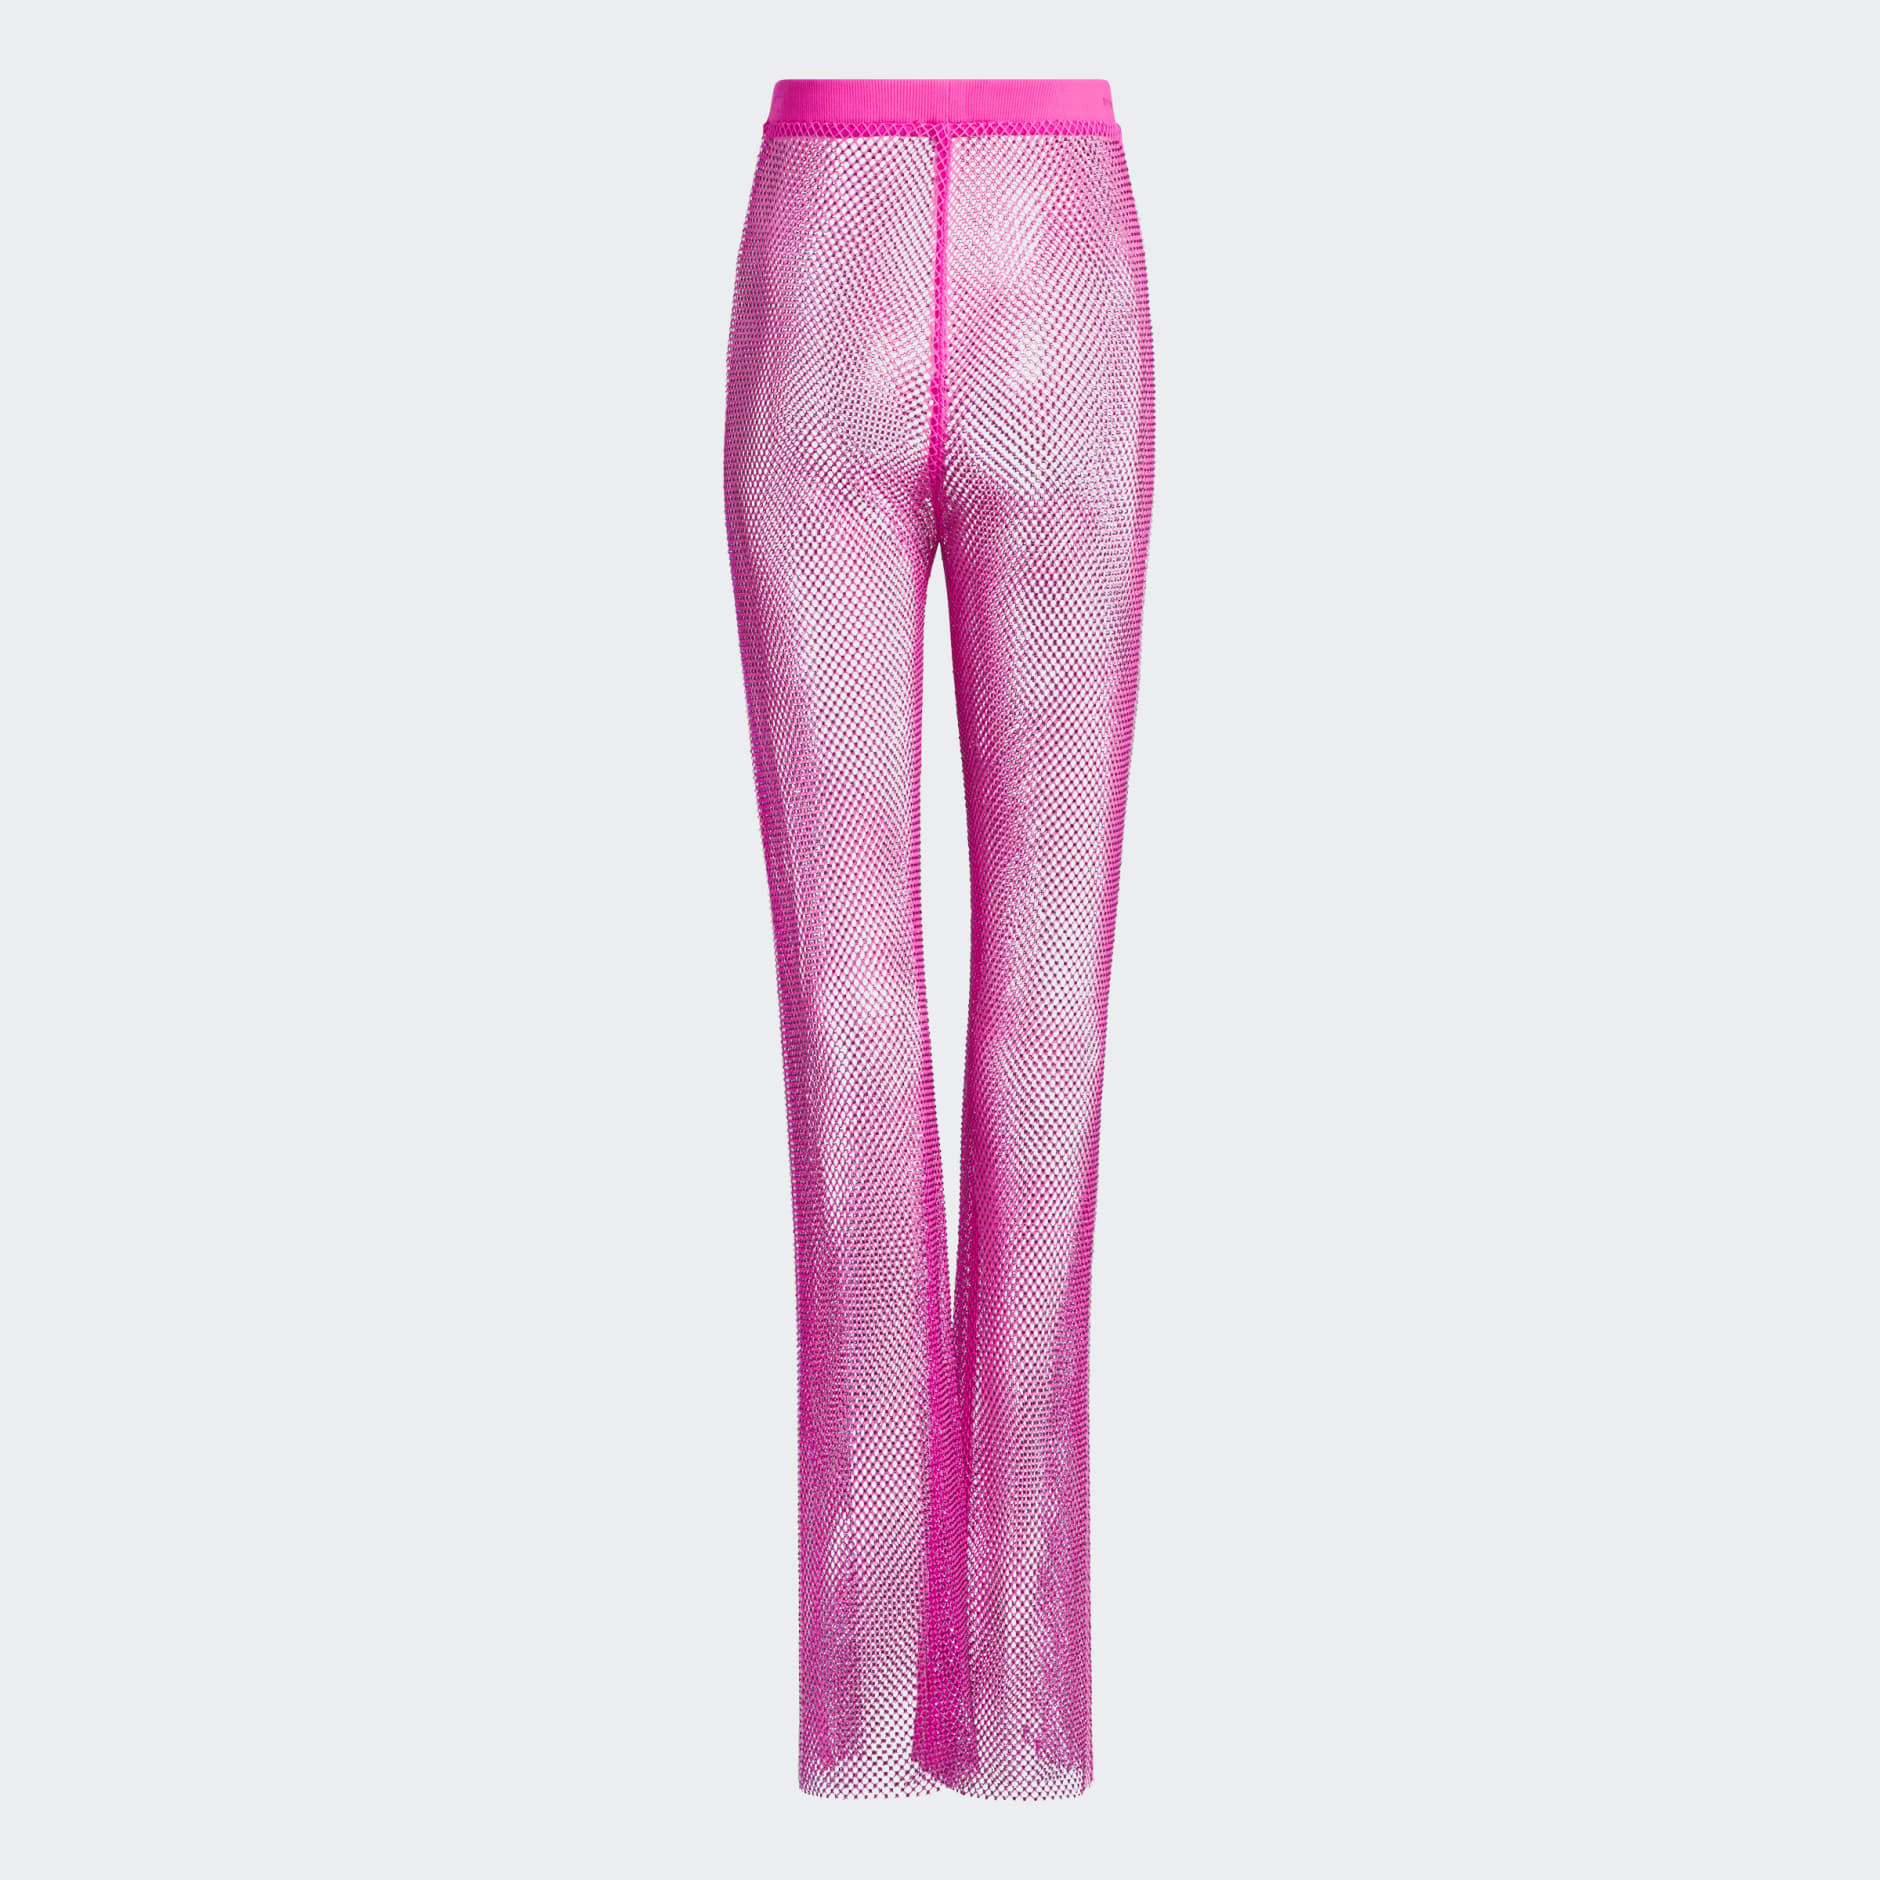 HOM PLUME UP - Pants - pink - Zalando.de